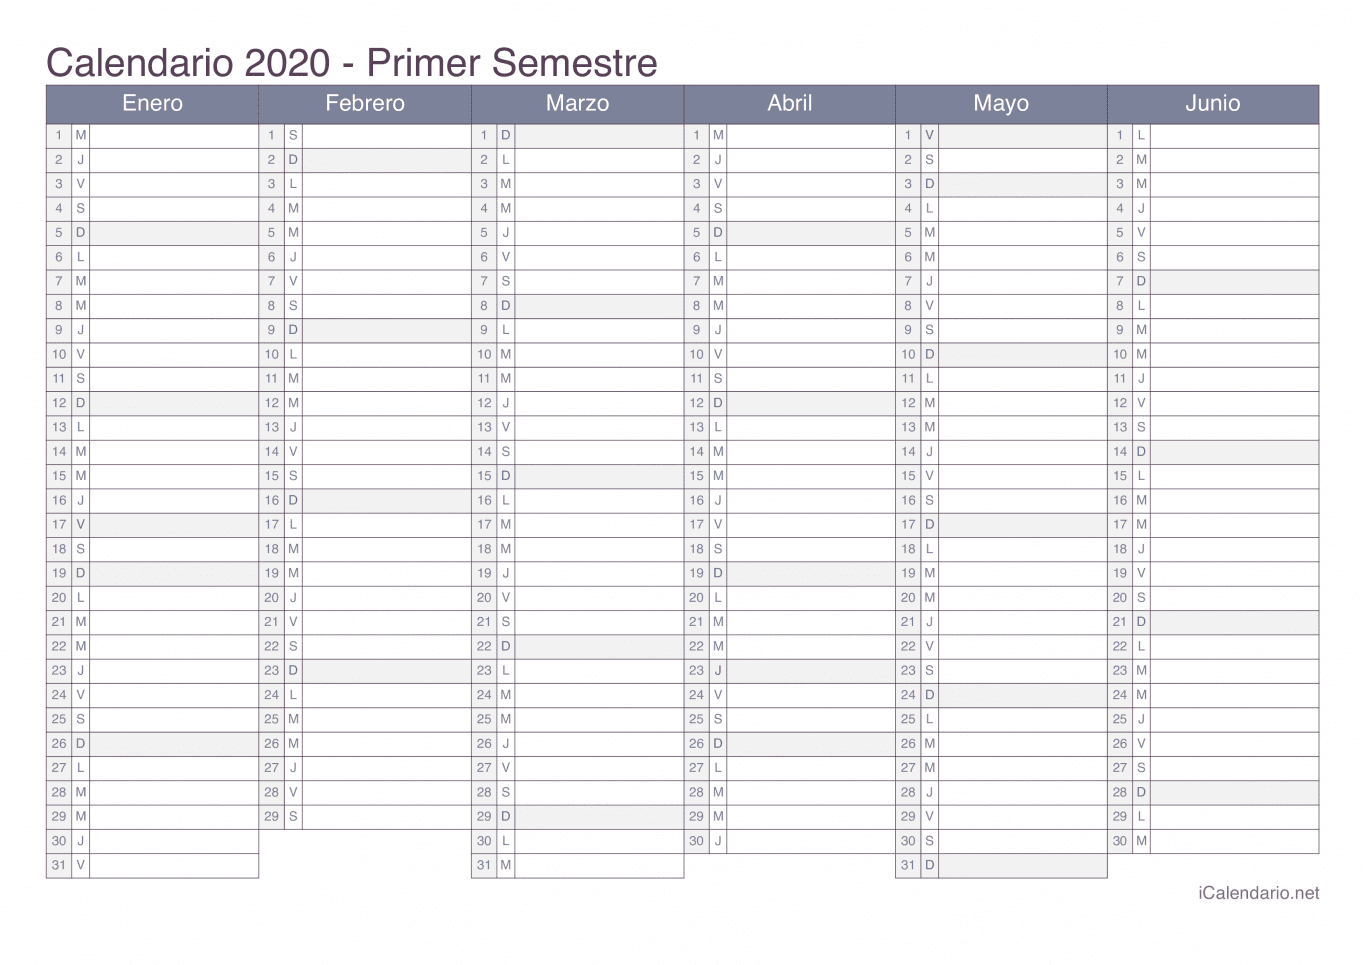 Calendario por semestre 2020 - Office